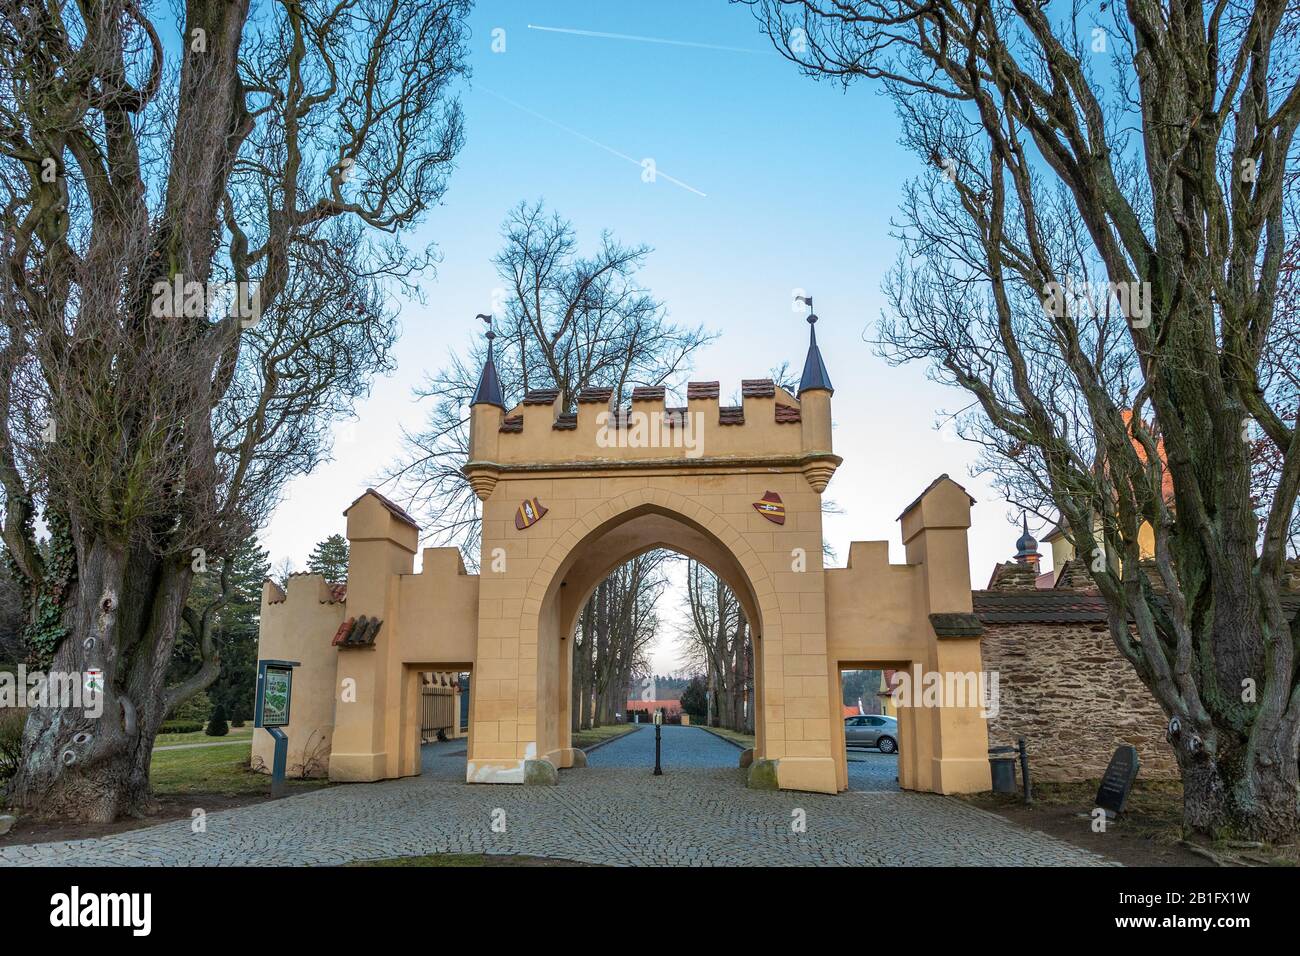 Zruc nad Sazavou, Tschechien - Haupttor der schönen gotischen Burg in Zruc nad Sazavou im Winter. Mittelböhmen, Tschechien. Stockfoto